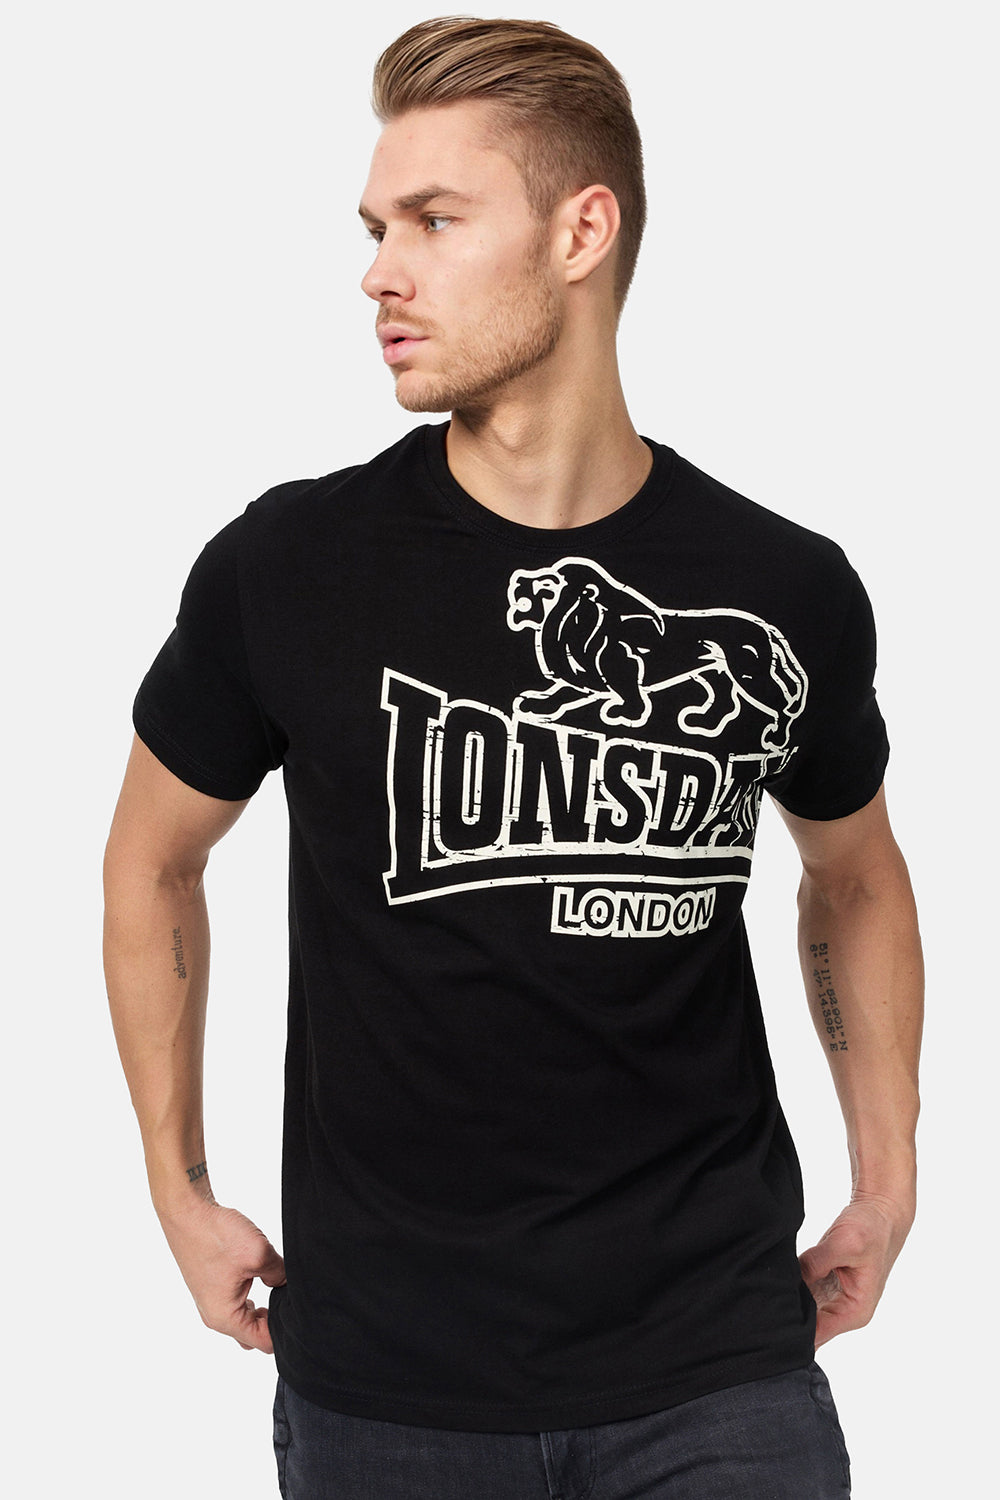 Lonsdale Langsett T-Shirt Black